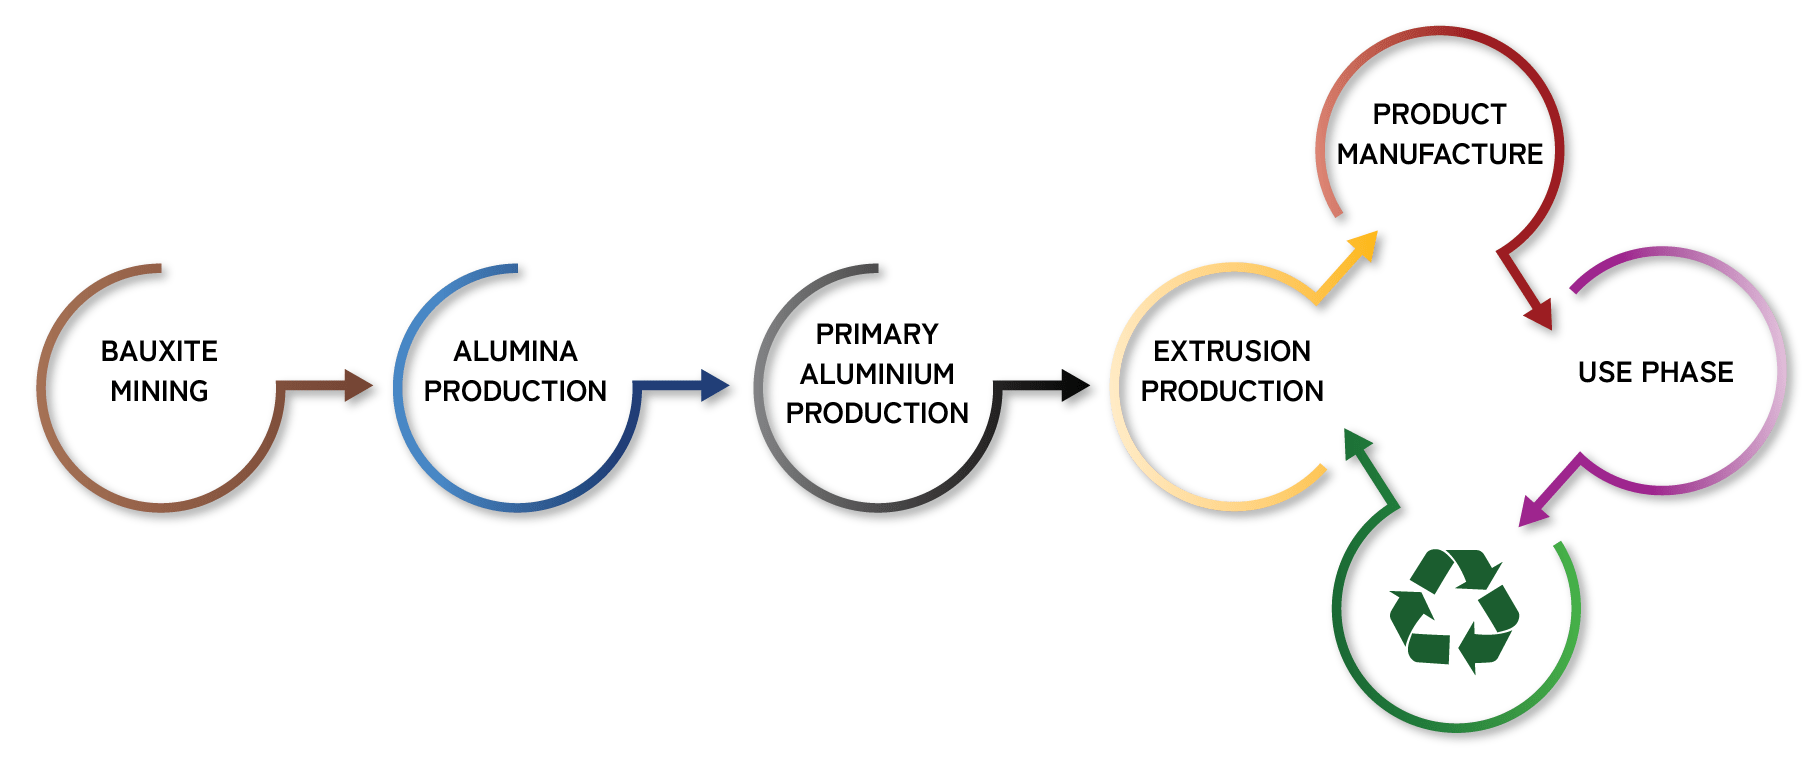 aluminum production